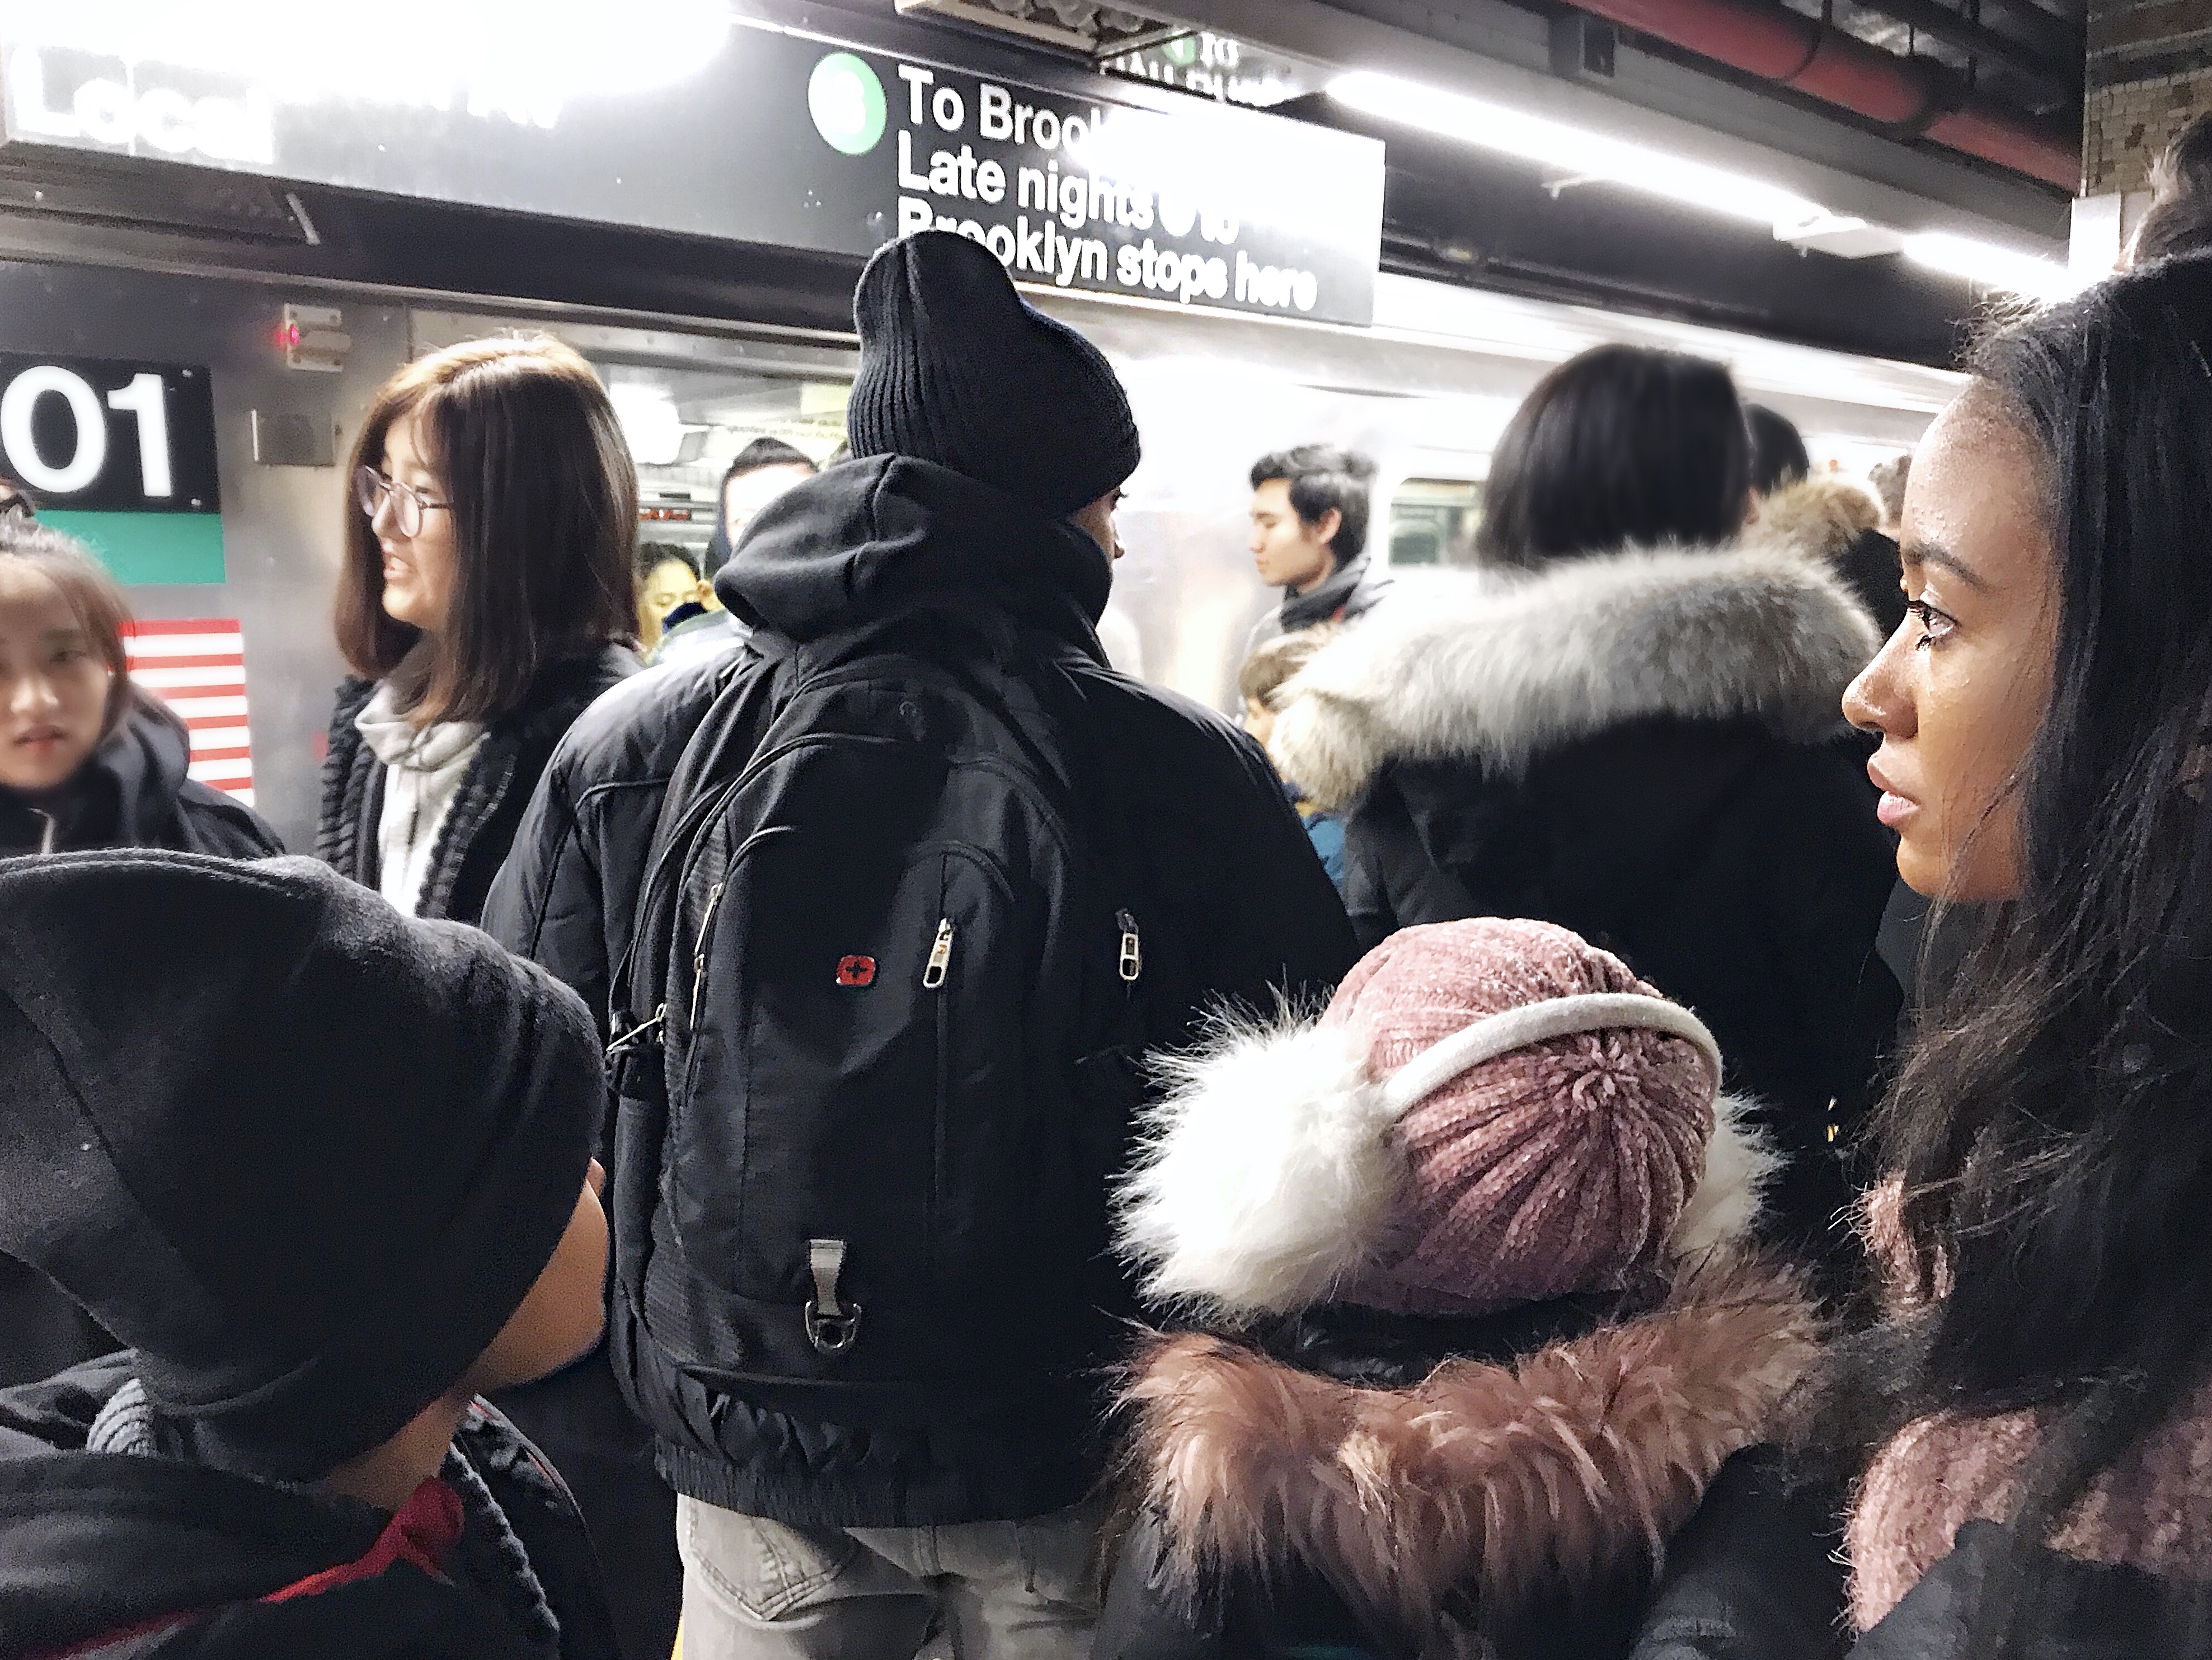 NYC subway station 